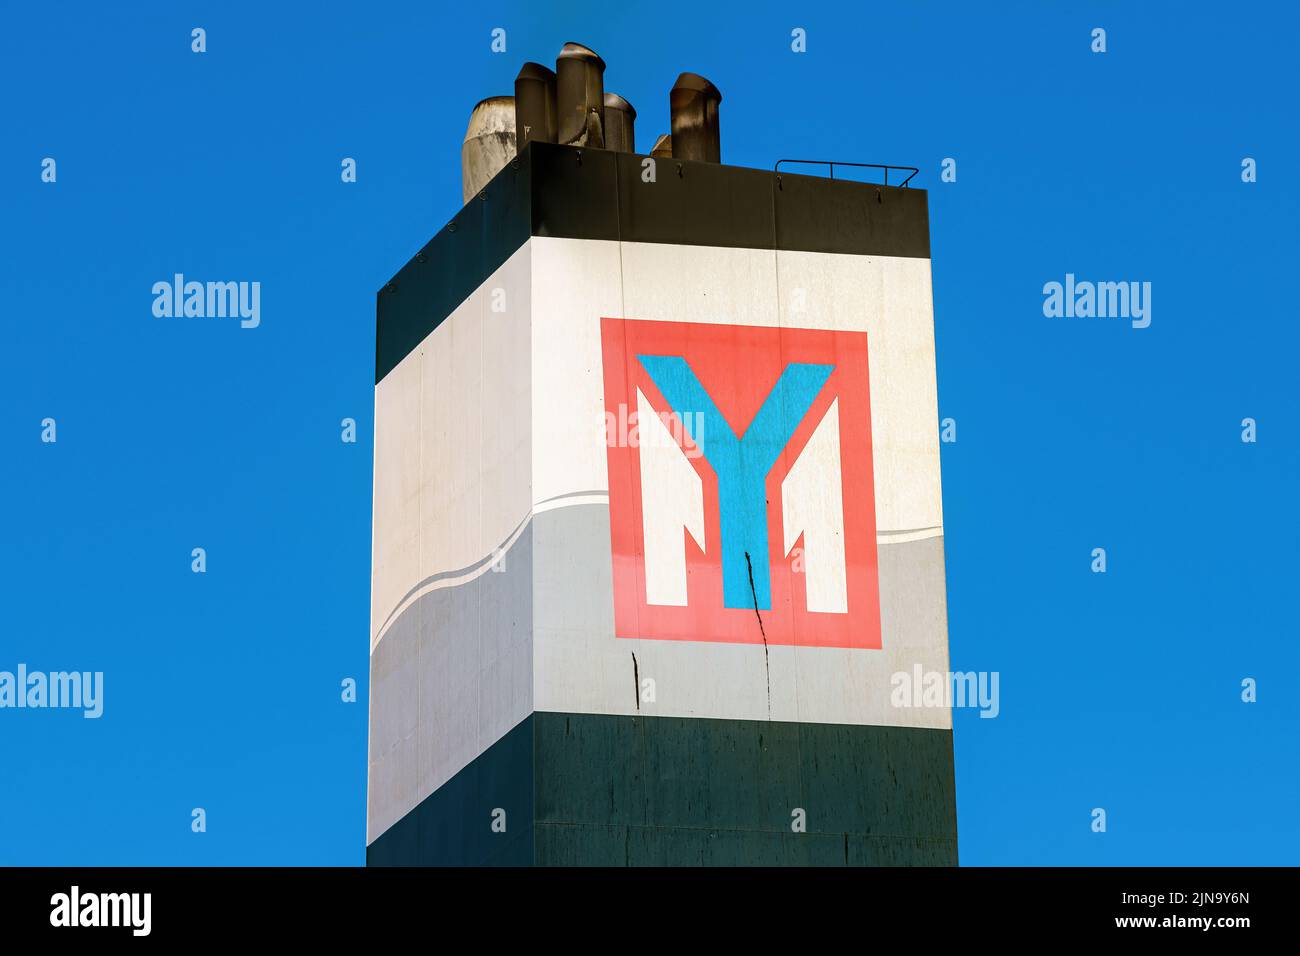 Le logo Yang Ming sur l'entonnoir du porte-conteneurs YM Wellness- juillet 2020. Banque D'Images